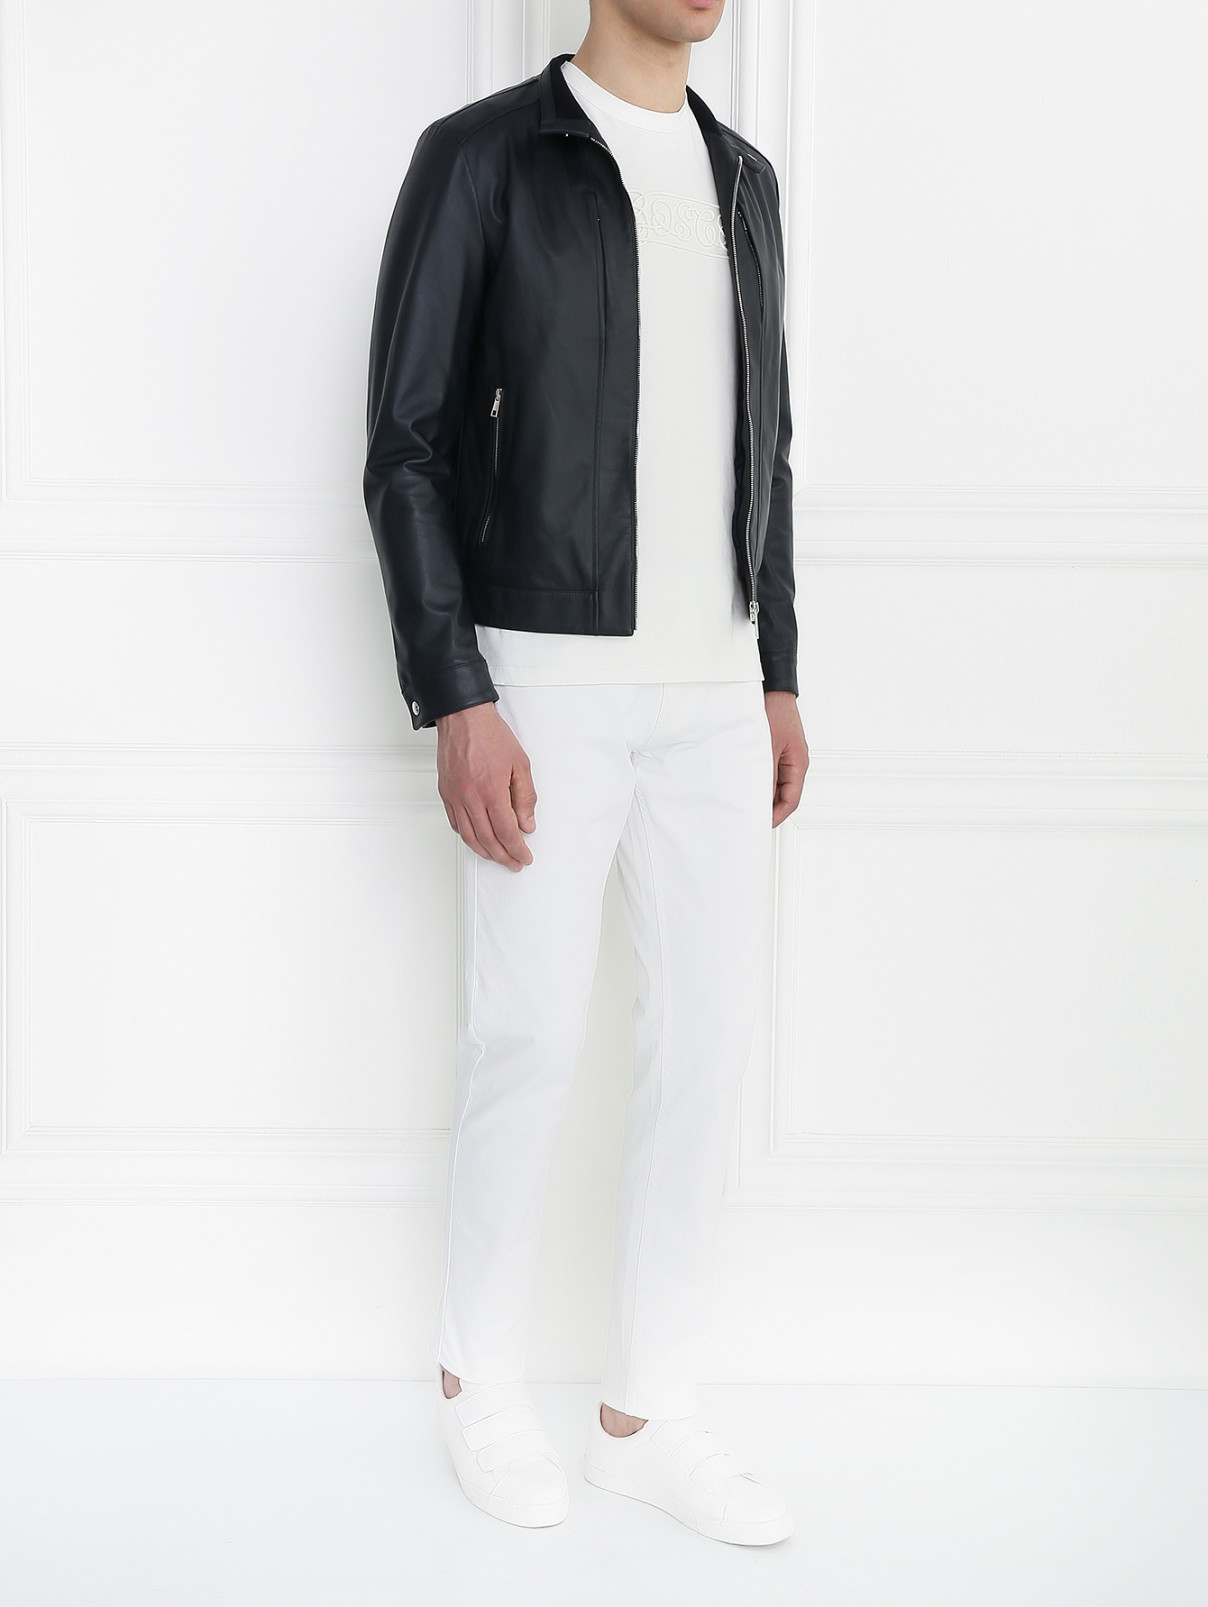 Куртка из кожи BOSCO  –  Модель Общий вид  – Цвет:  Черный